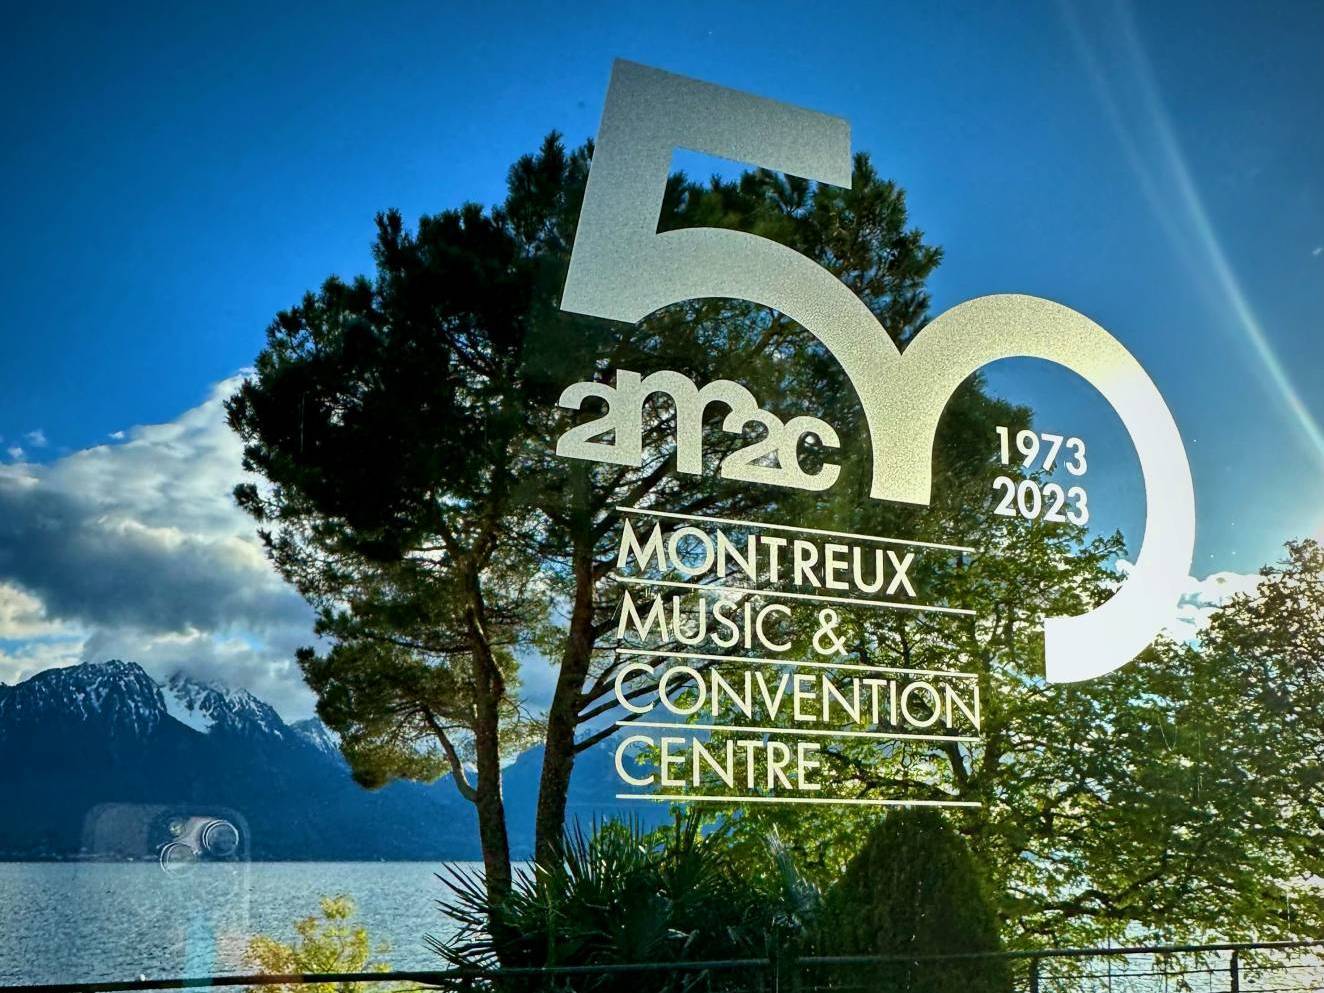 Le Centre de Congrès de Montreux (2m2c) célèbre son 50ème anniversaire